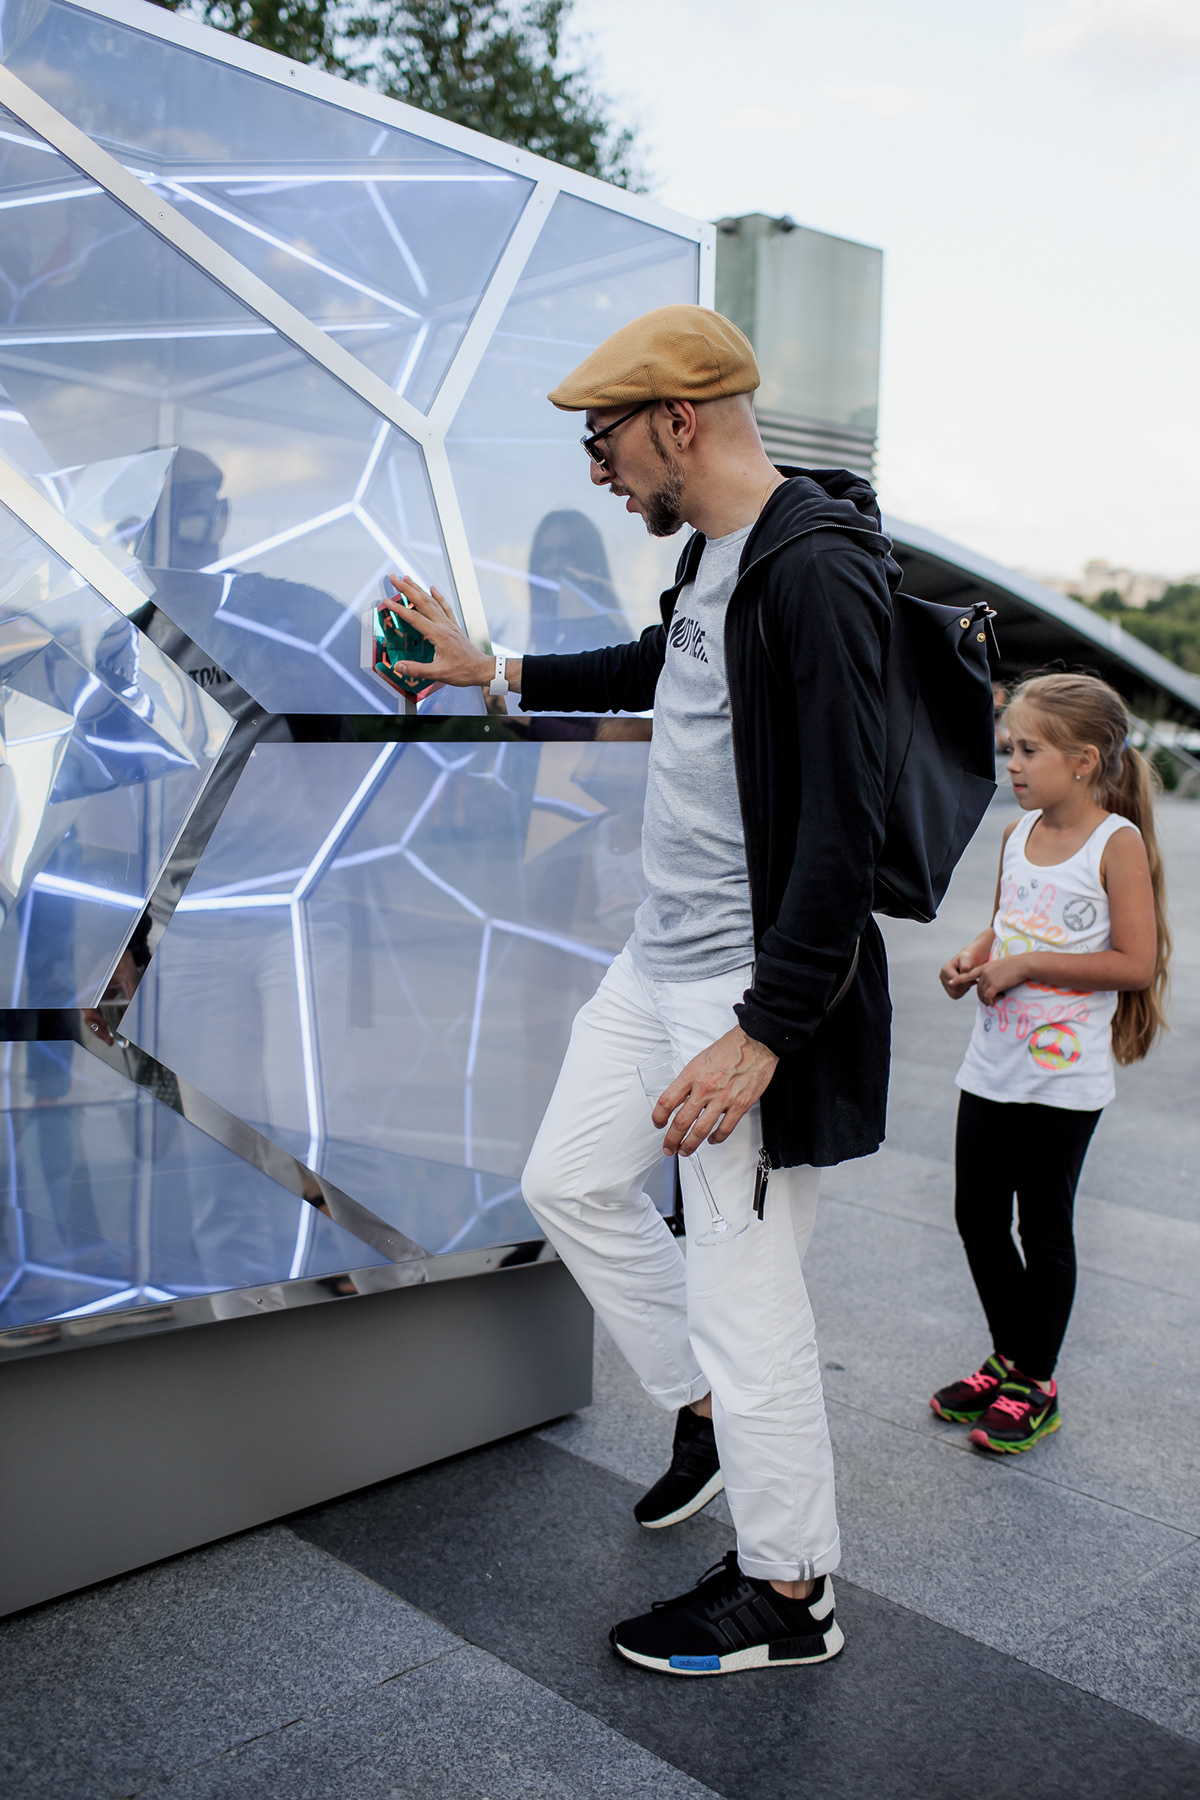 light installation Lexus Hybrid Art science art contemporary art light public art art Exhibition Design  Adobe Portfolio